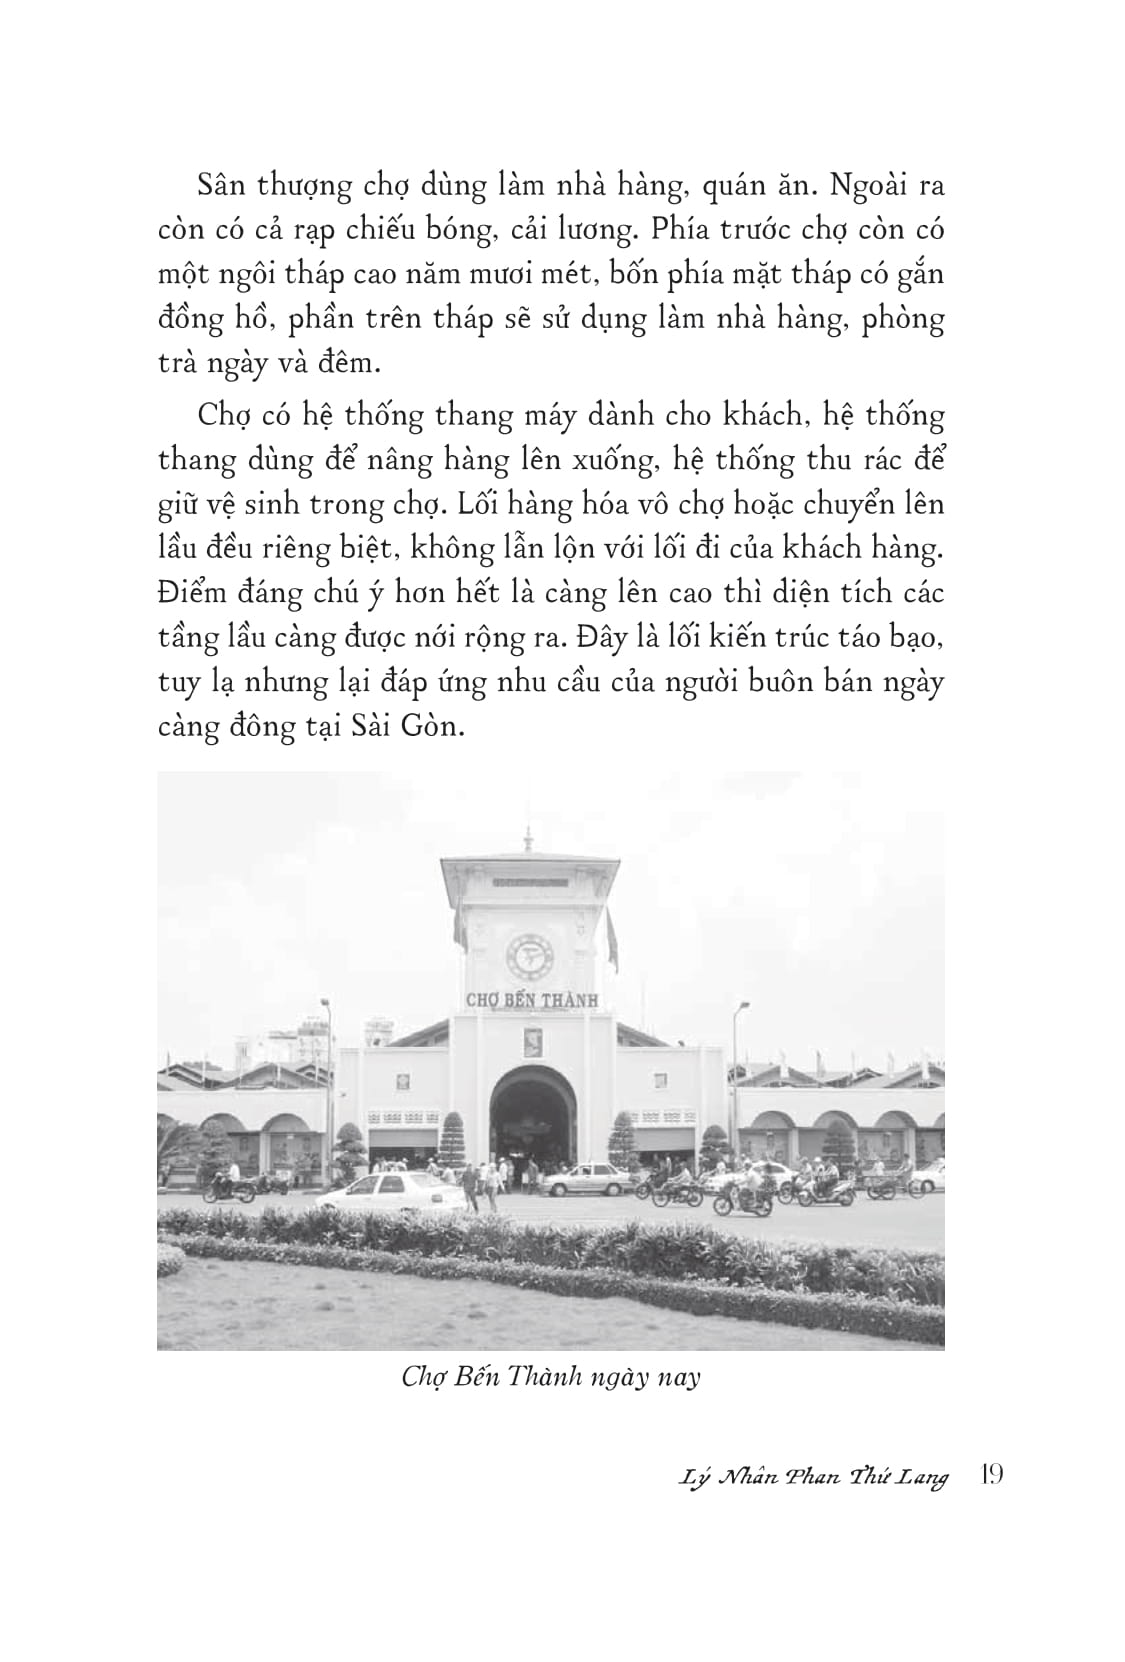 Sài Gòn Vang Bóng PDF